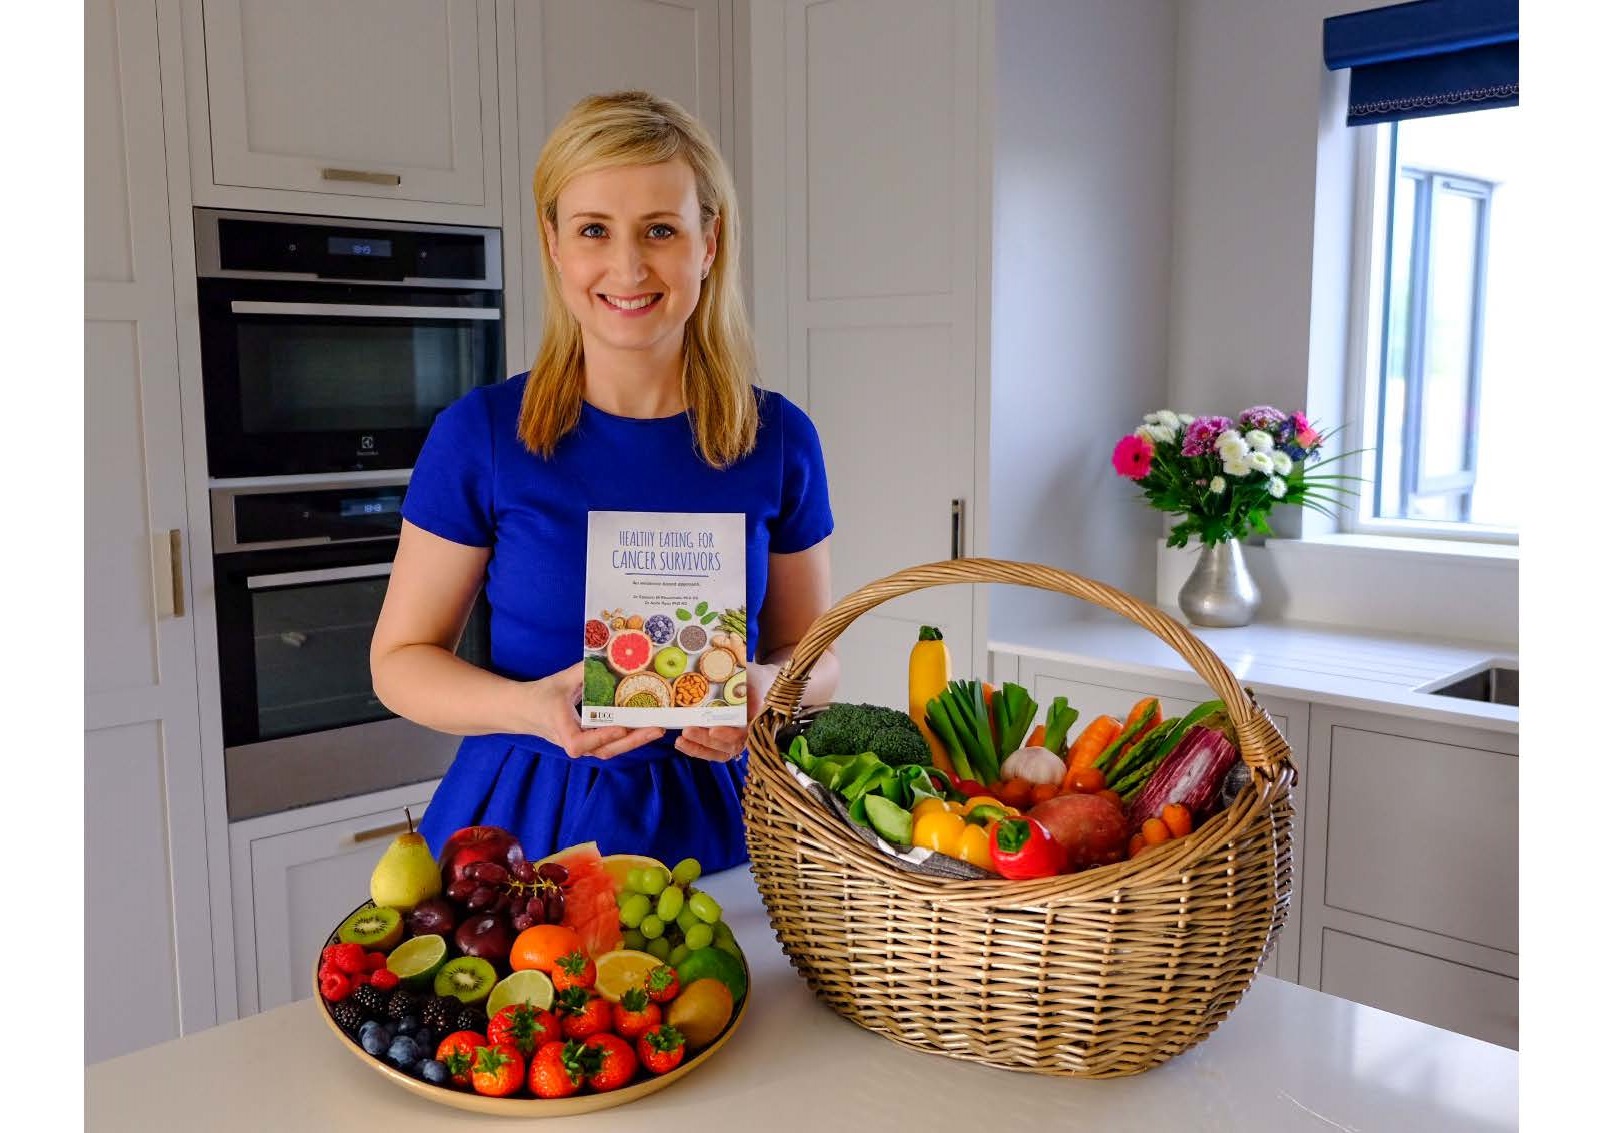 Healthy Eating Cookbook for Cancer survivors